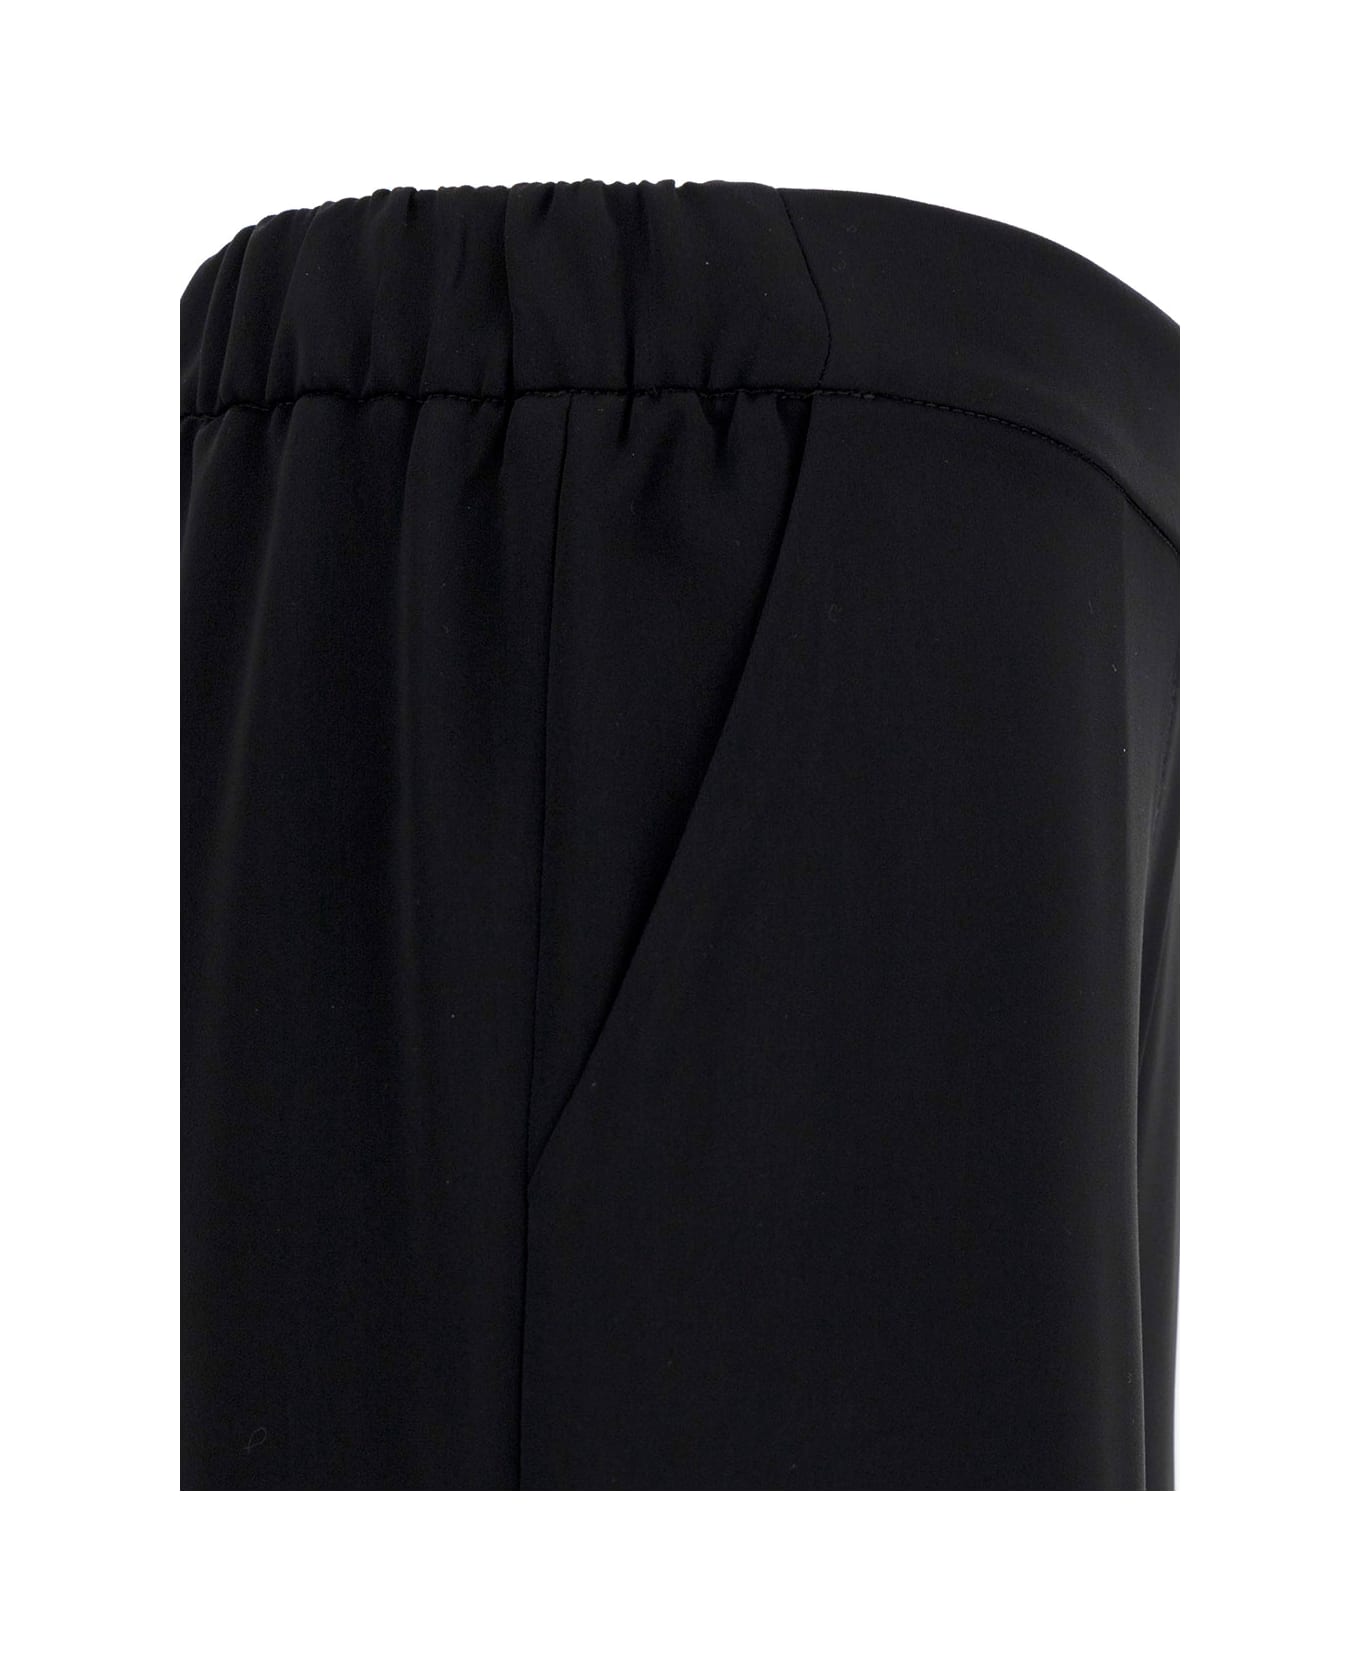 Parosh Black Loose Pants With Waist-band In Polyamide Woman - Black